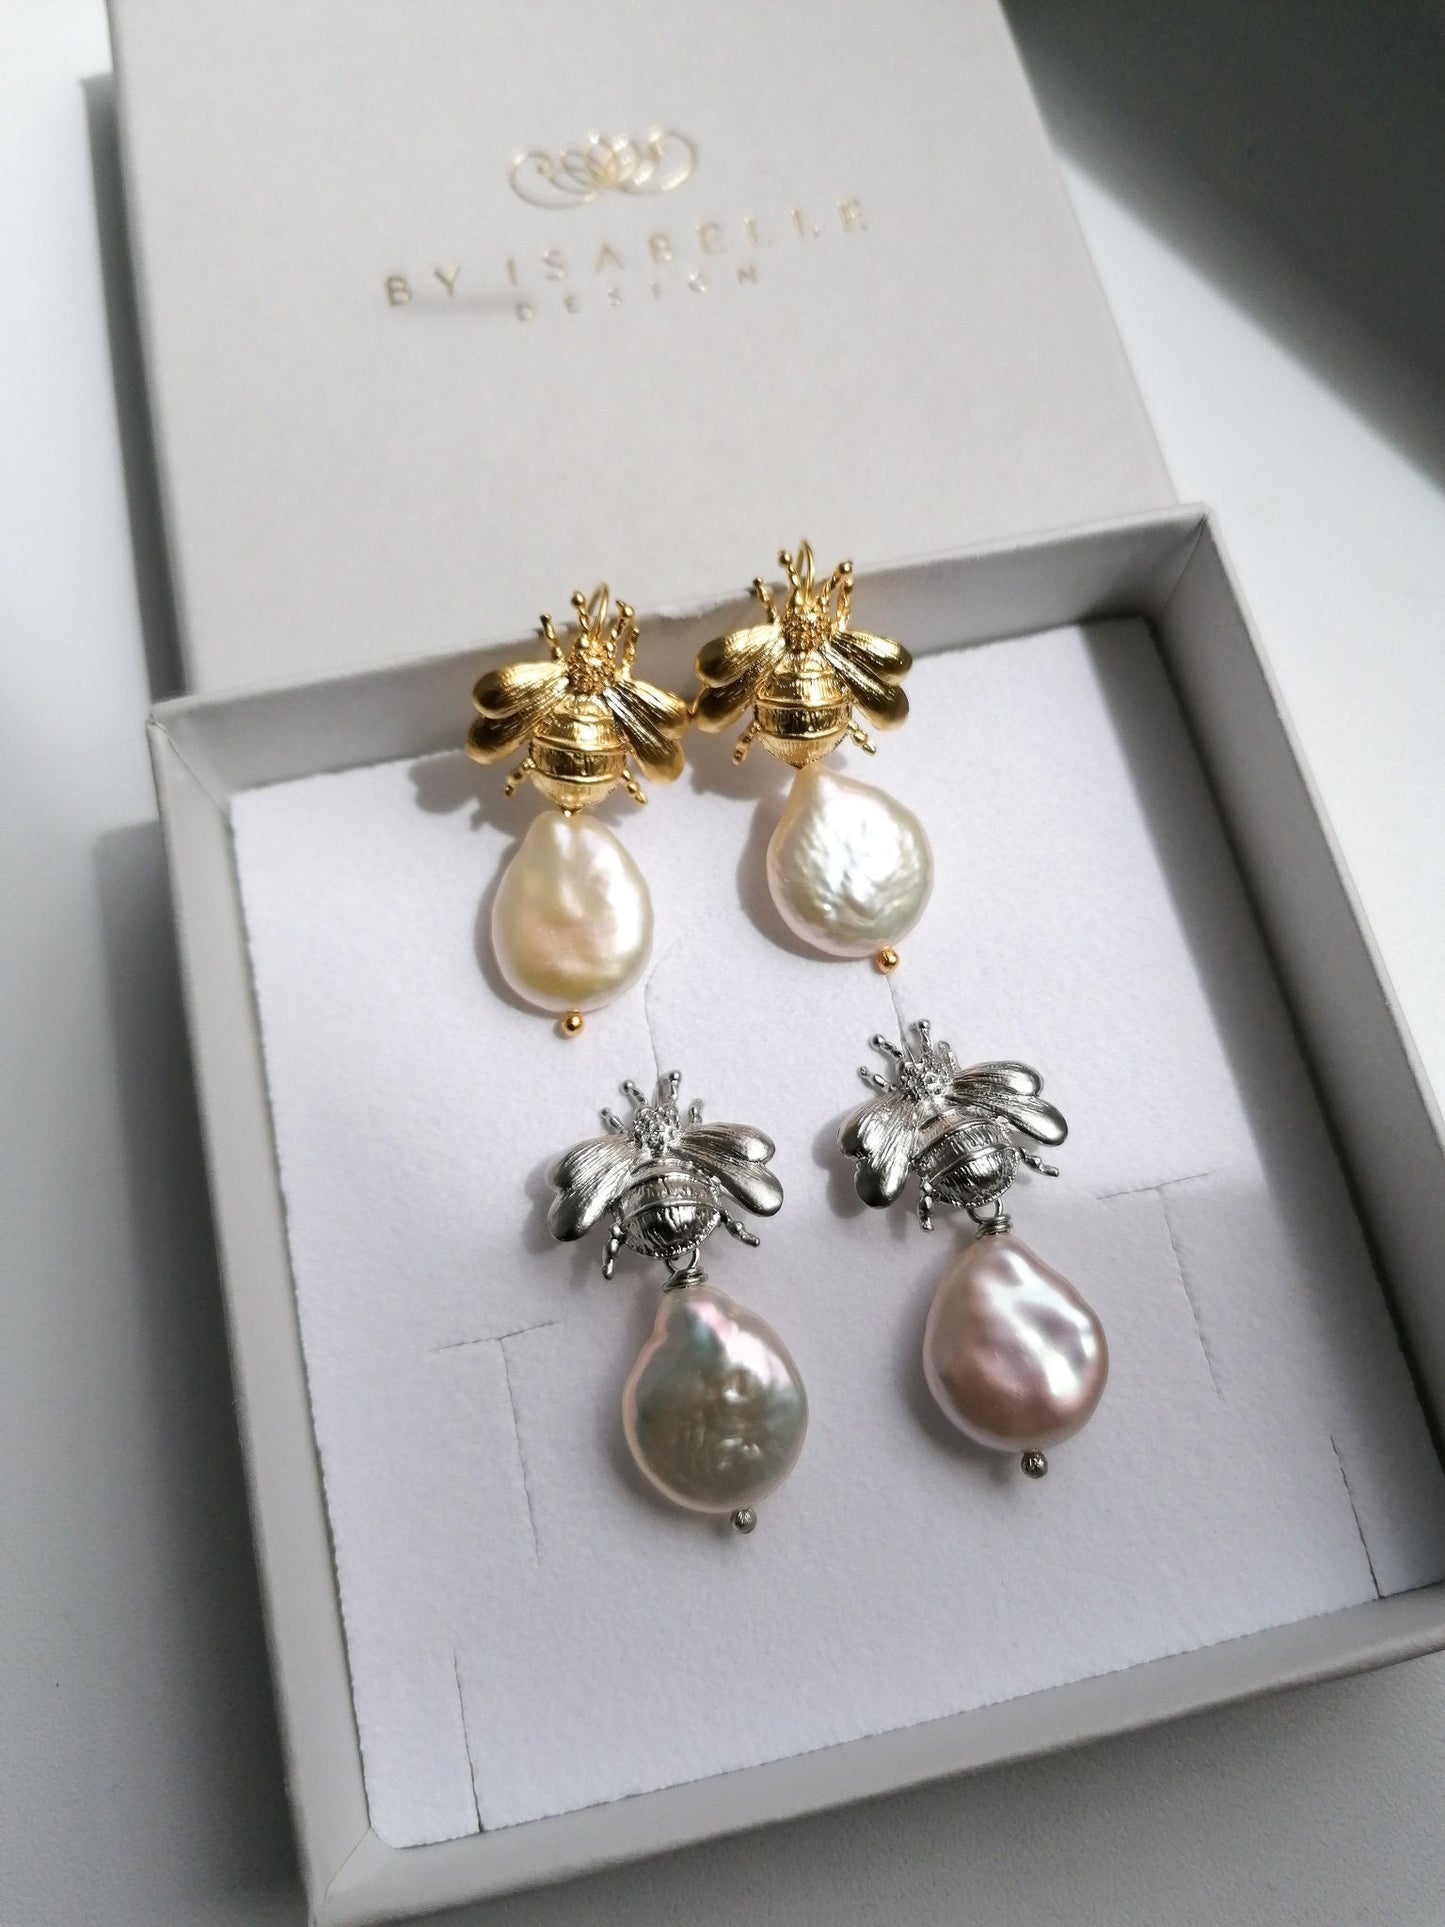 Bumblebee pearl earrings